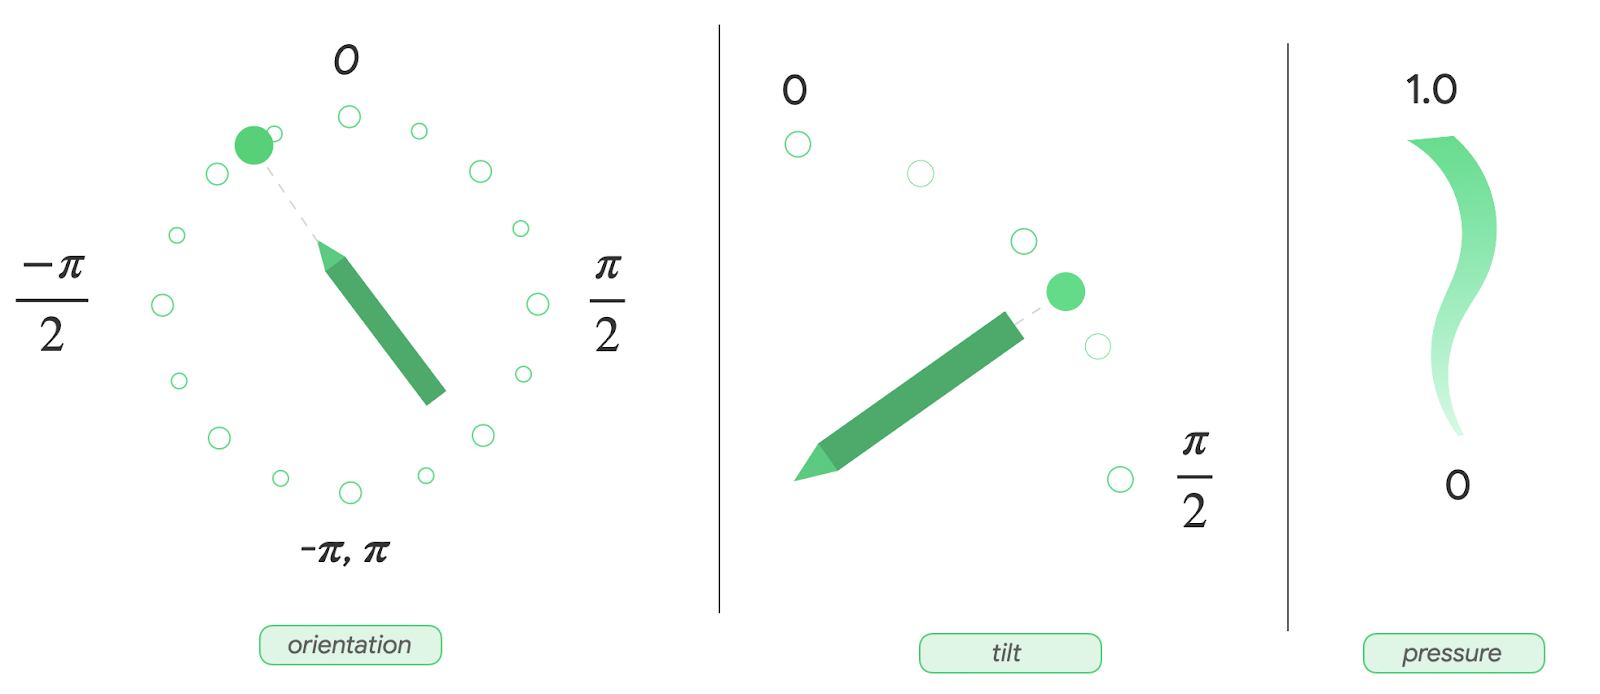 Visualização no painel das métricas de orientação, inclinação e pressão